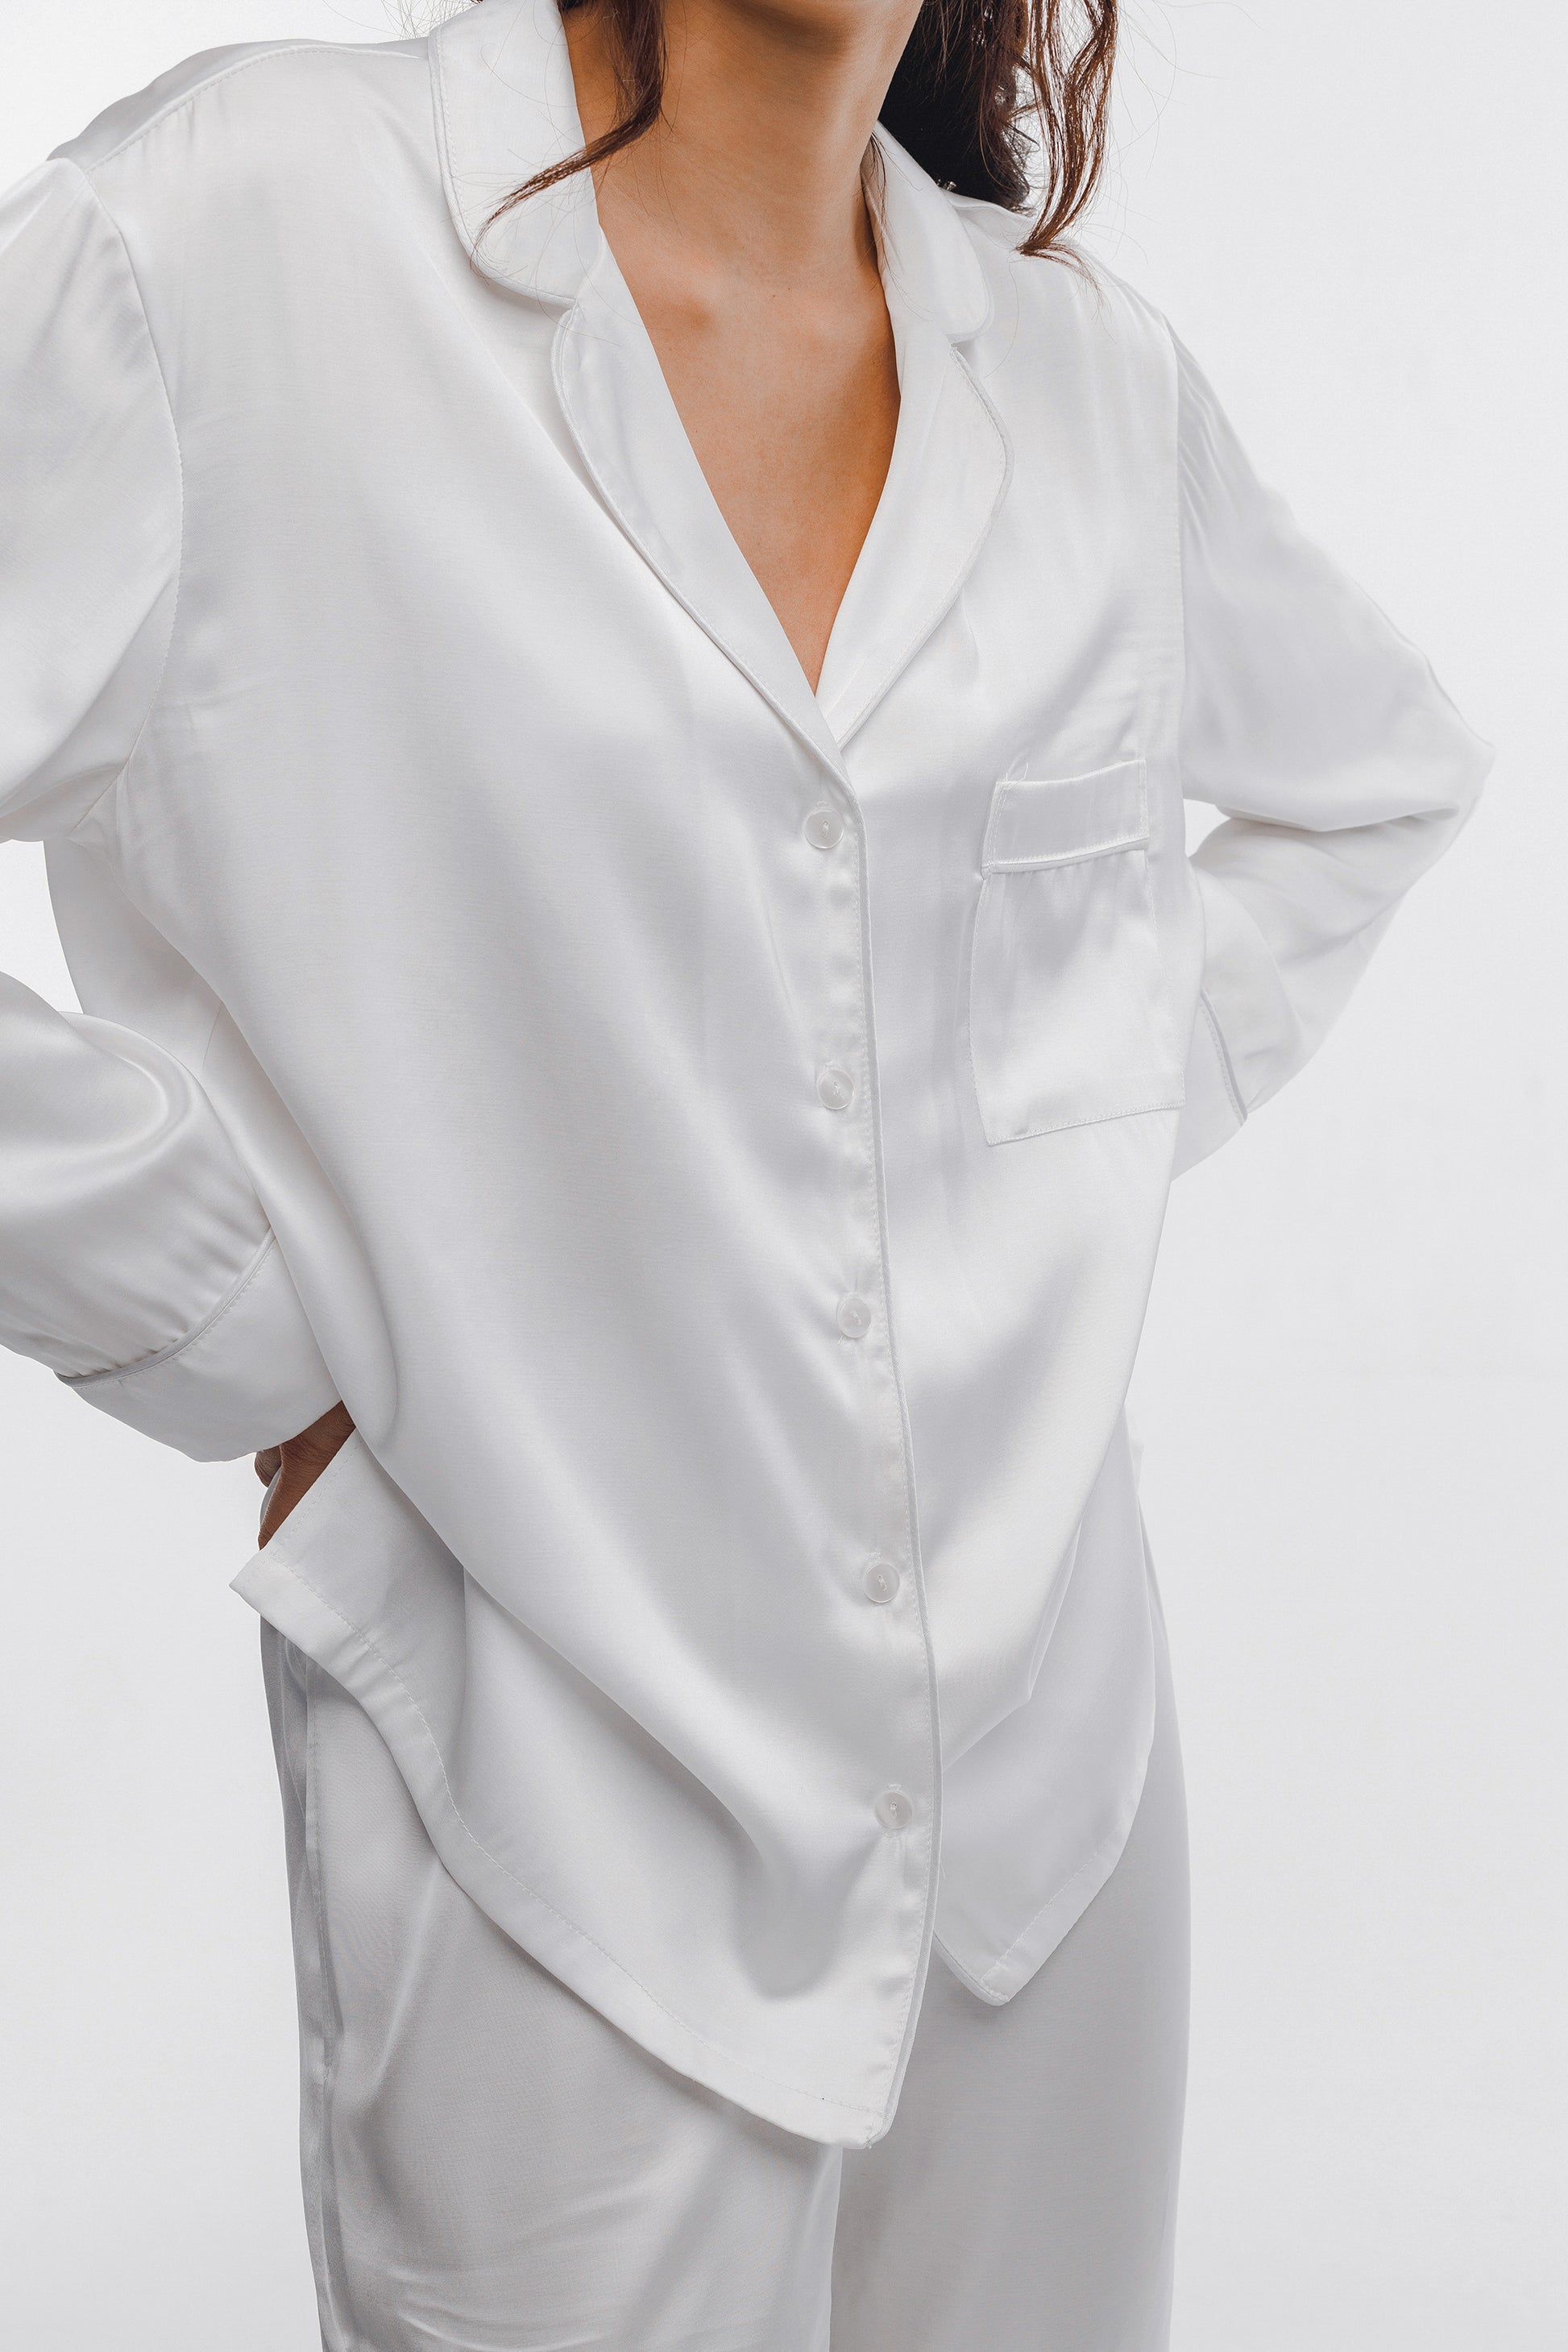 White silk pajamas